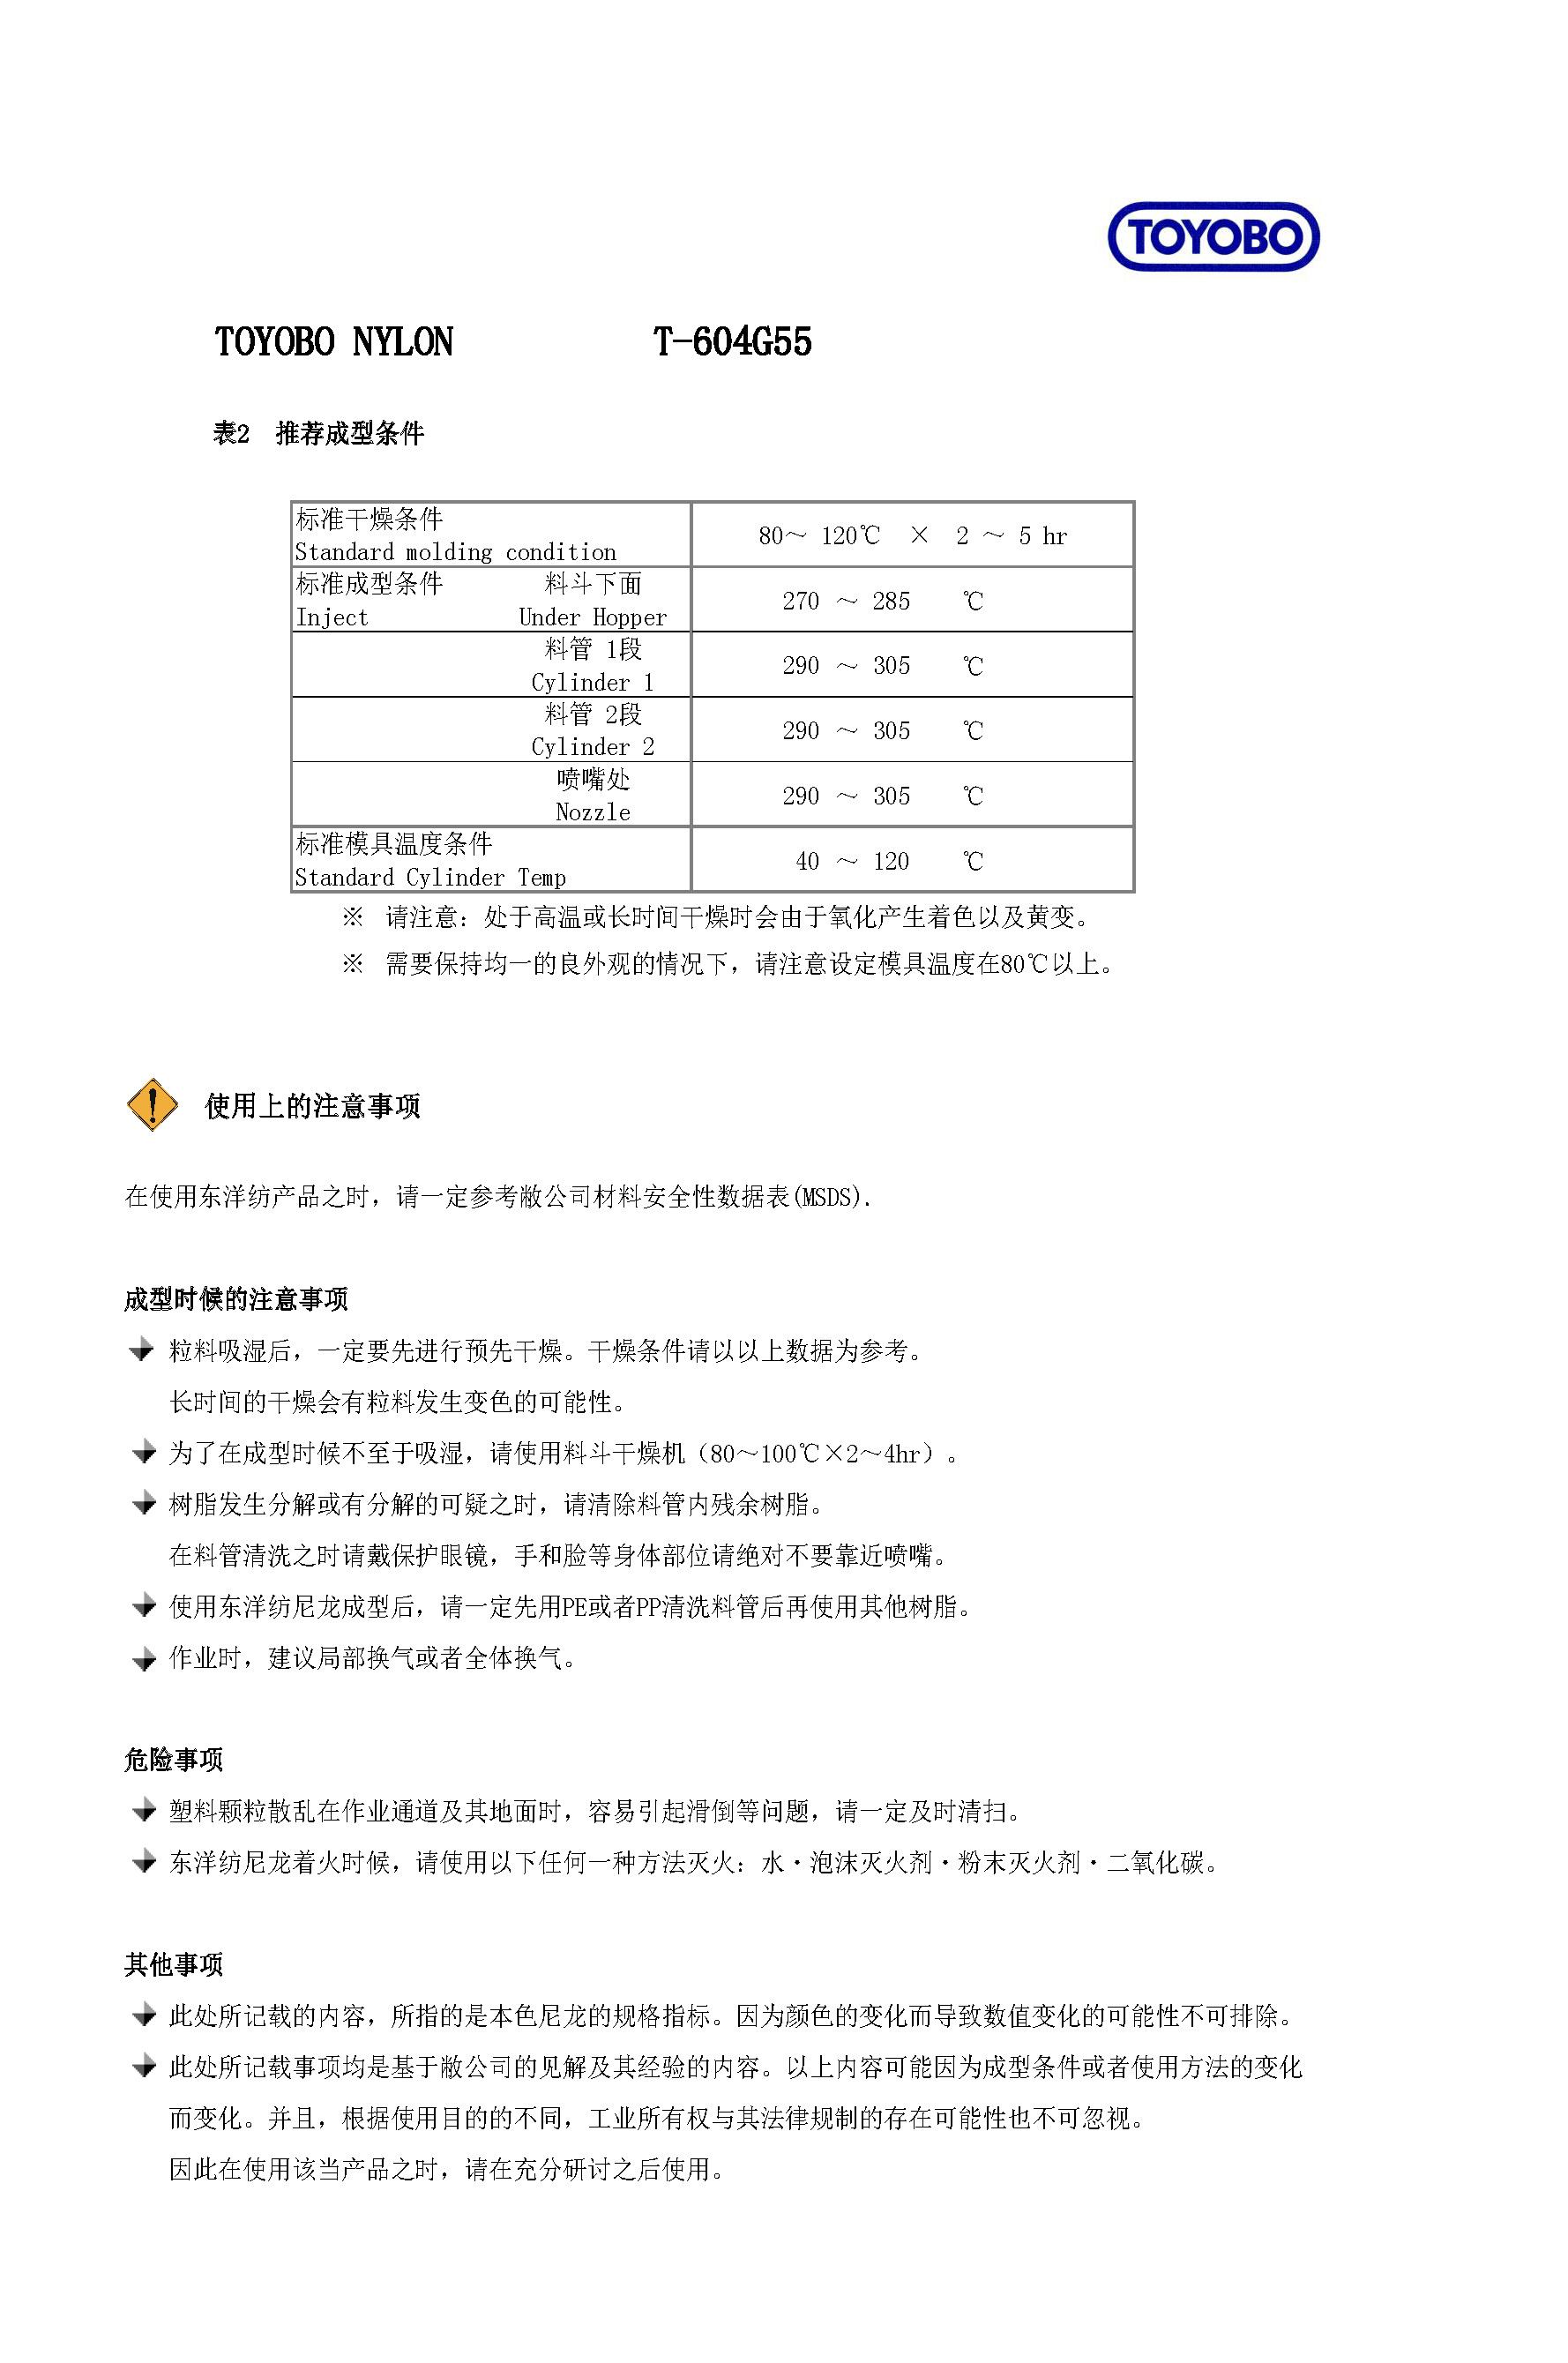 中文・物性（T-604G55）pdf_页面_3.jpg